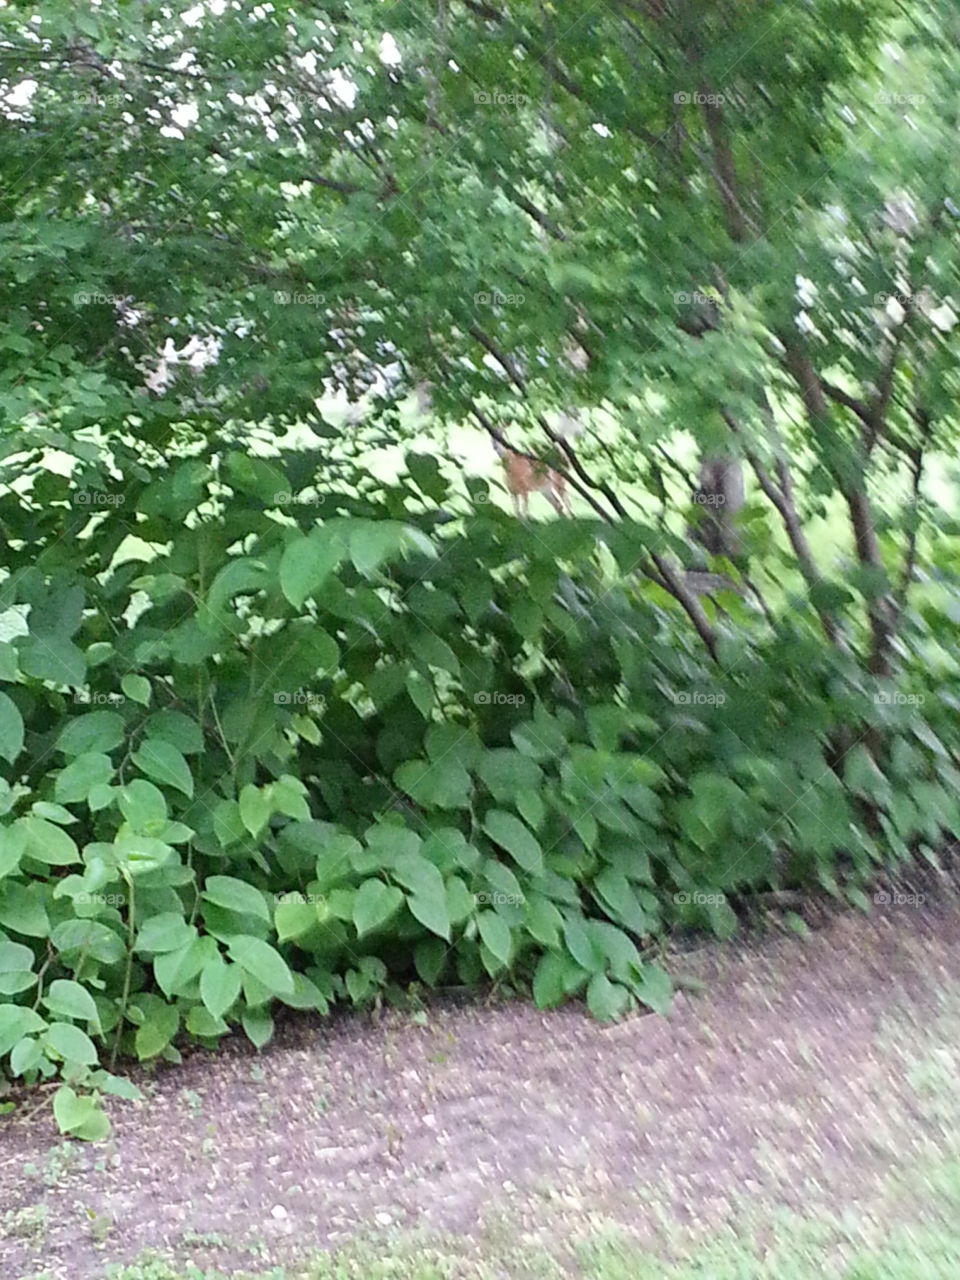 Deer in hiding